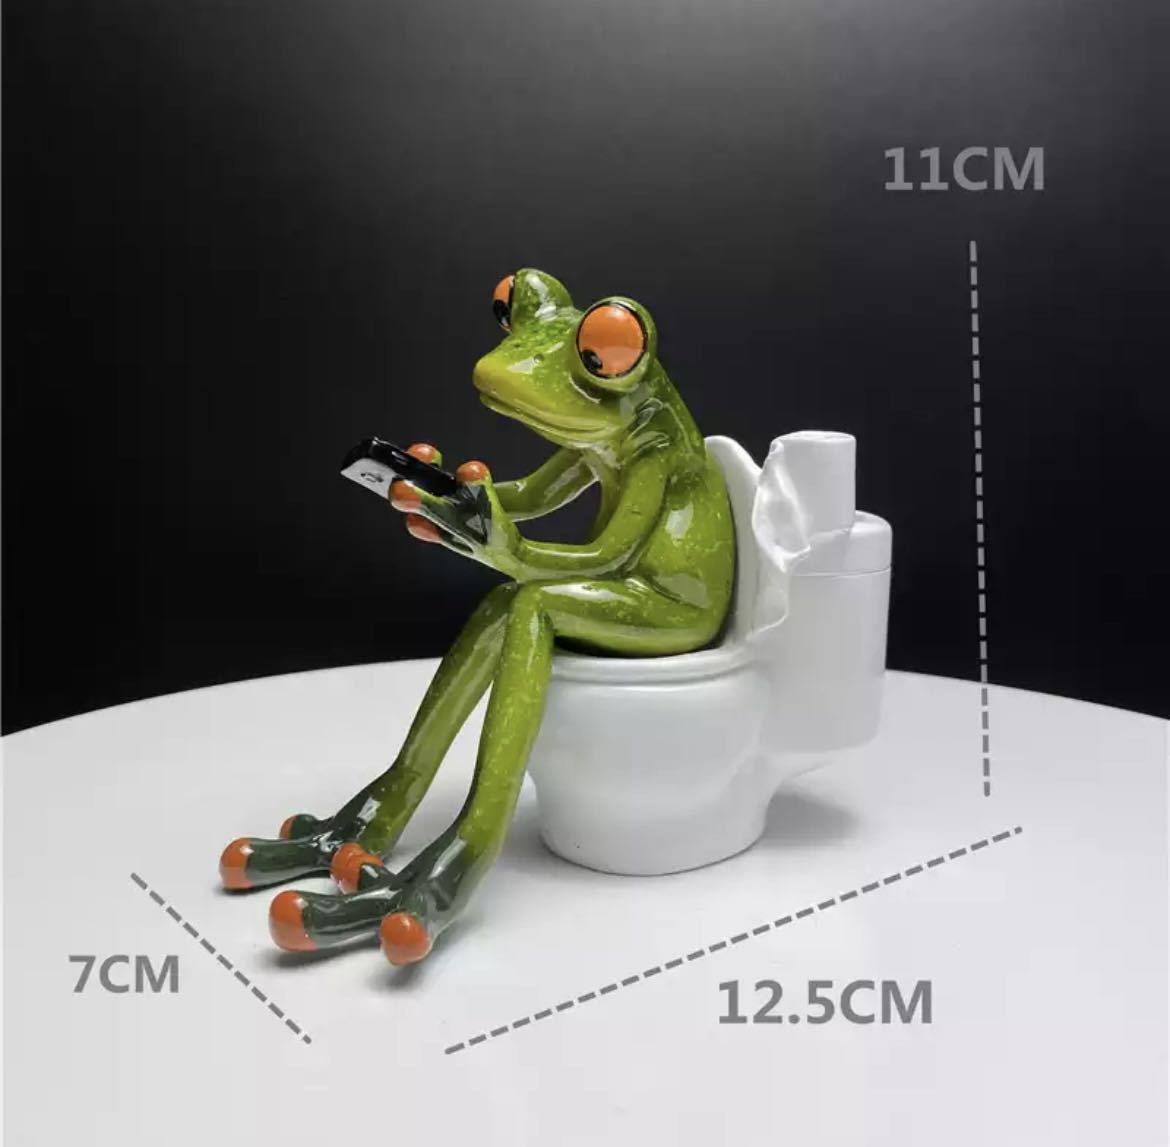 カエルの置物 樹脂 蛙 カエル フィギュア オーナメント インテリア 雑貨 置物 小物 雑貨 ユニーク 可愛い 装飾 トイレ 1560, ハンドメイド作品, インテリア, 雑貨, 置物, オブジェ